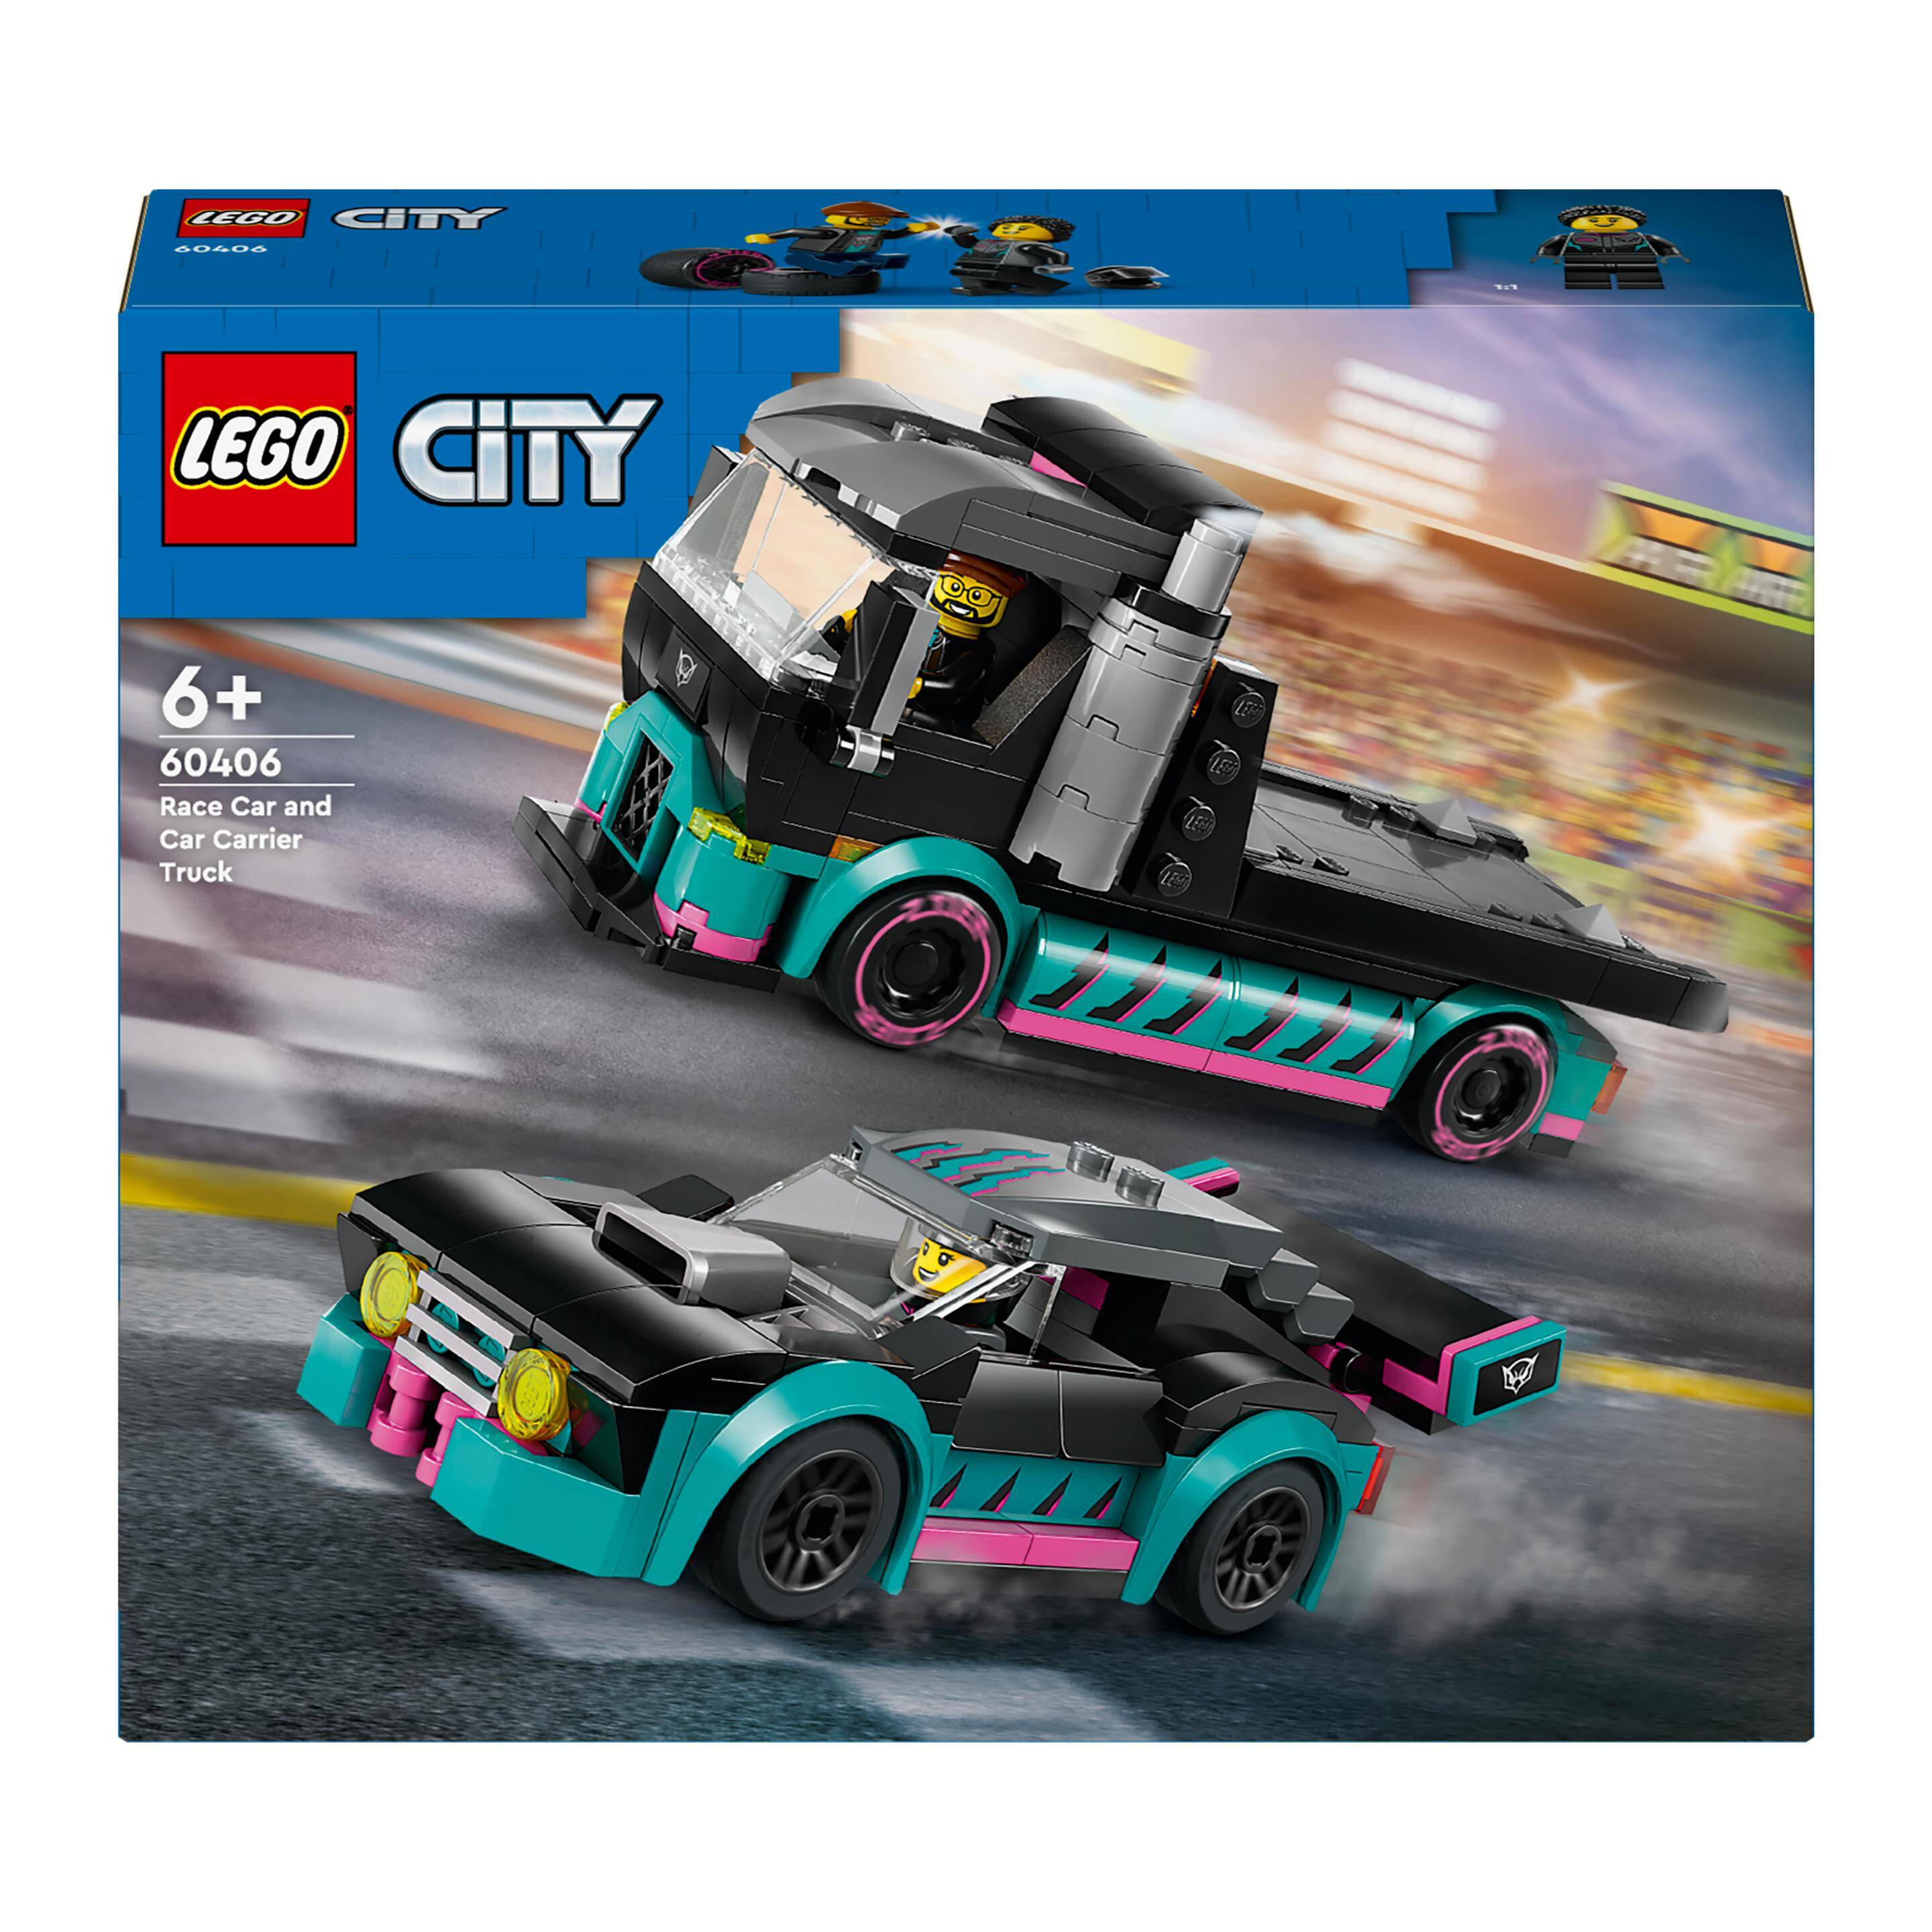 LEGO 60406 CITY Samochód wyścigowy i laweta p4. 328 elementów.